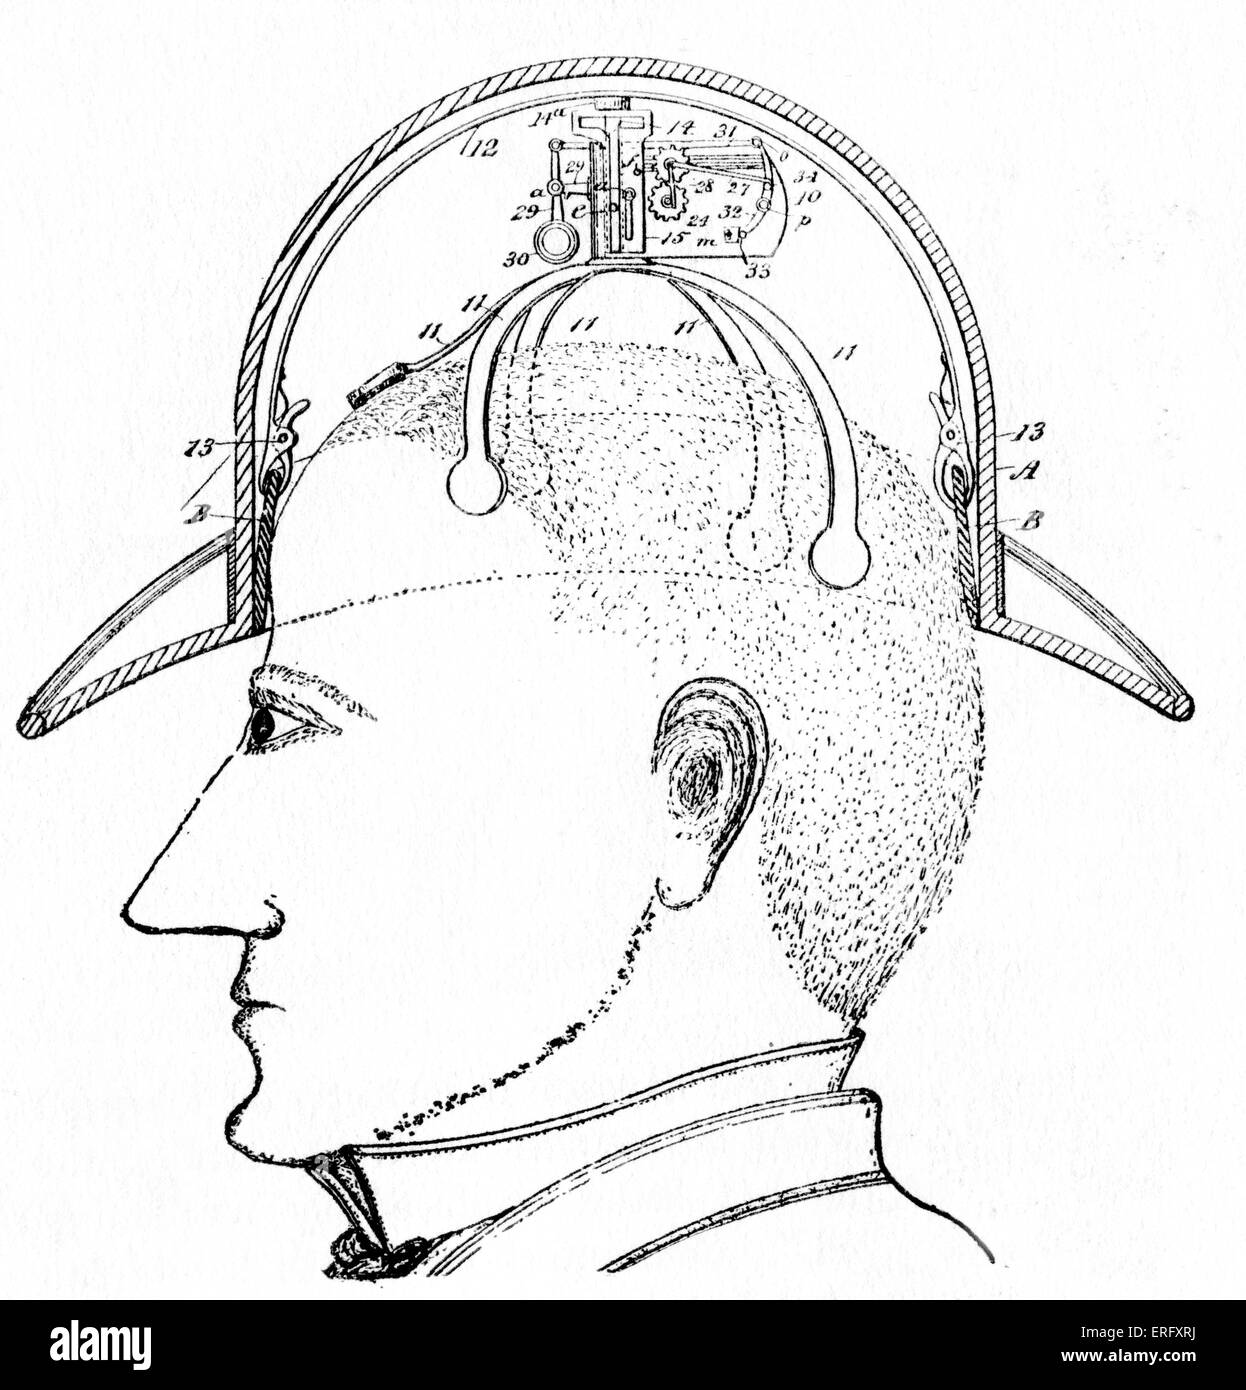 Diciannovesimo secolo design per un " commuter " 's hat. La hat eleva e ruota sulla testa consentendo a chi lo indossa di rendere educato Foto Stock